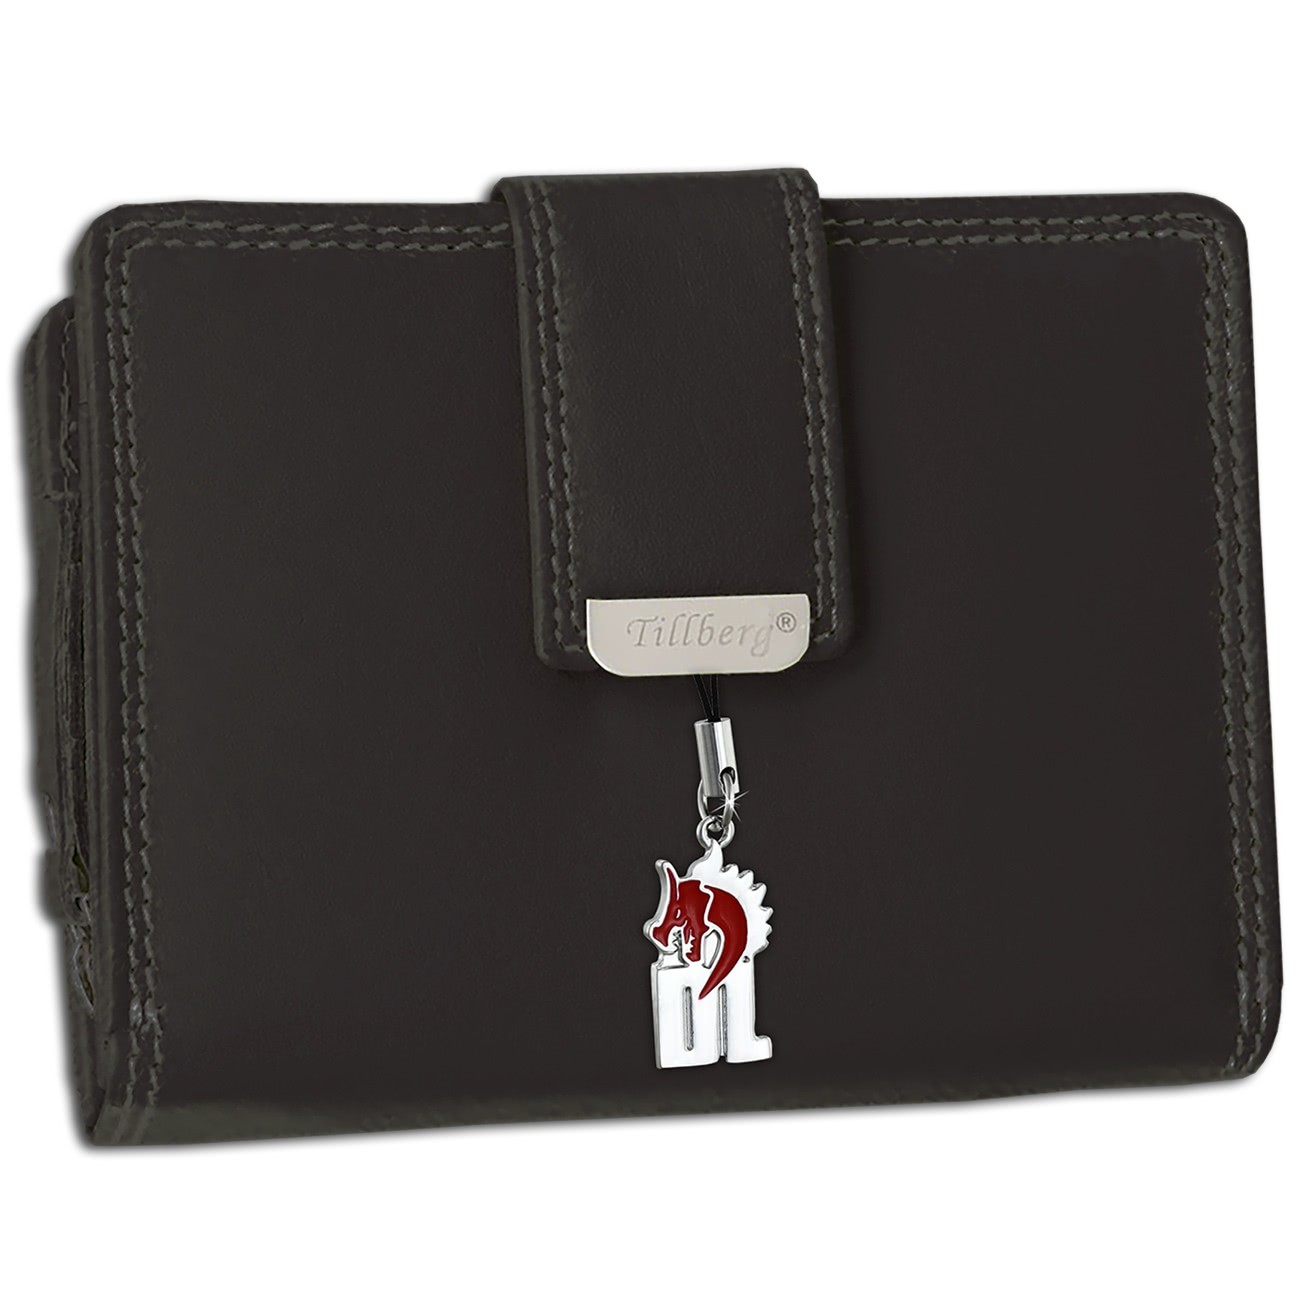 DrachenLeder Geldbörse schwarz Echtleder Portemonnaie RFID Schutz Damen OPR715S